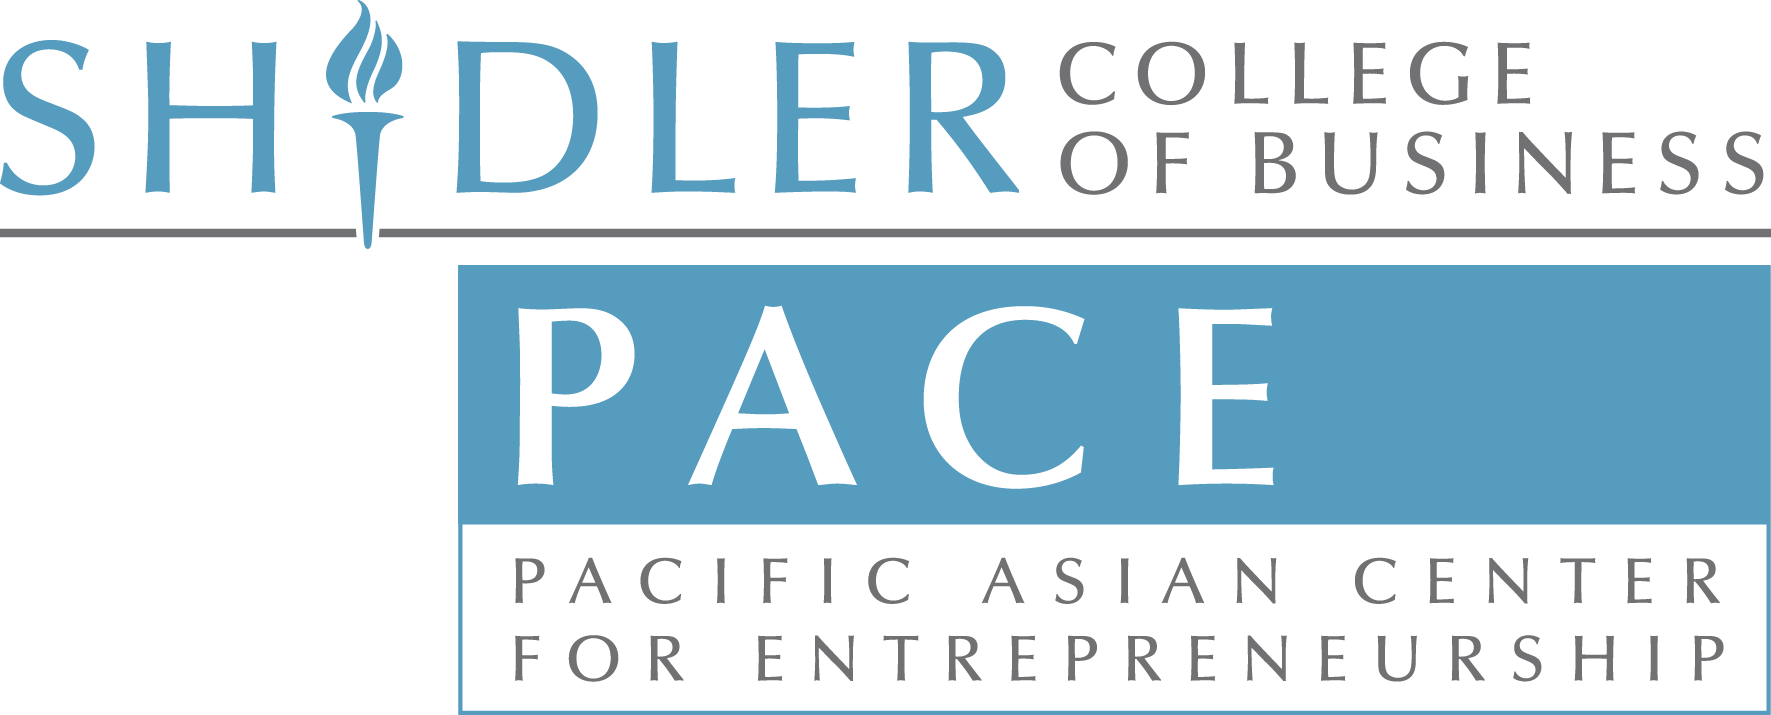 Pacific Asian Center for Entrepreneurship